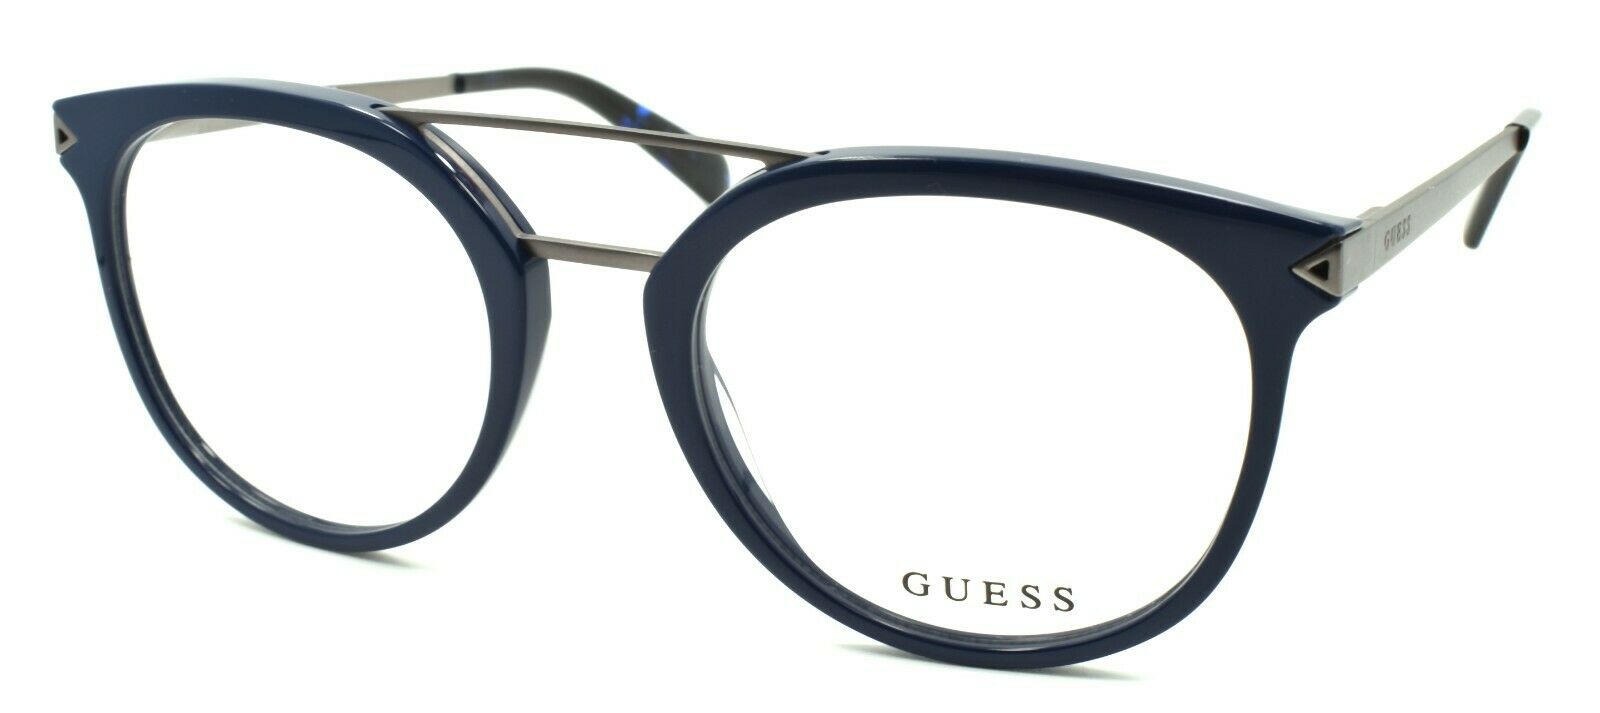 1-GUESS GU1964 092 Men's Eyeglasses Frames Aviator 50-20-145 Blue + CASE-889214012593-IKSpecs